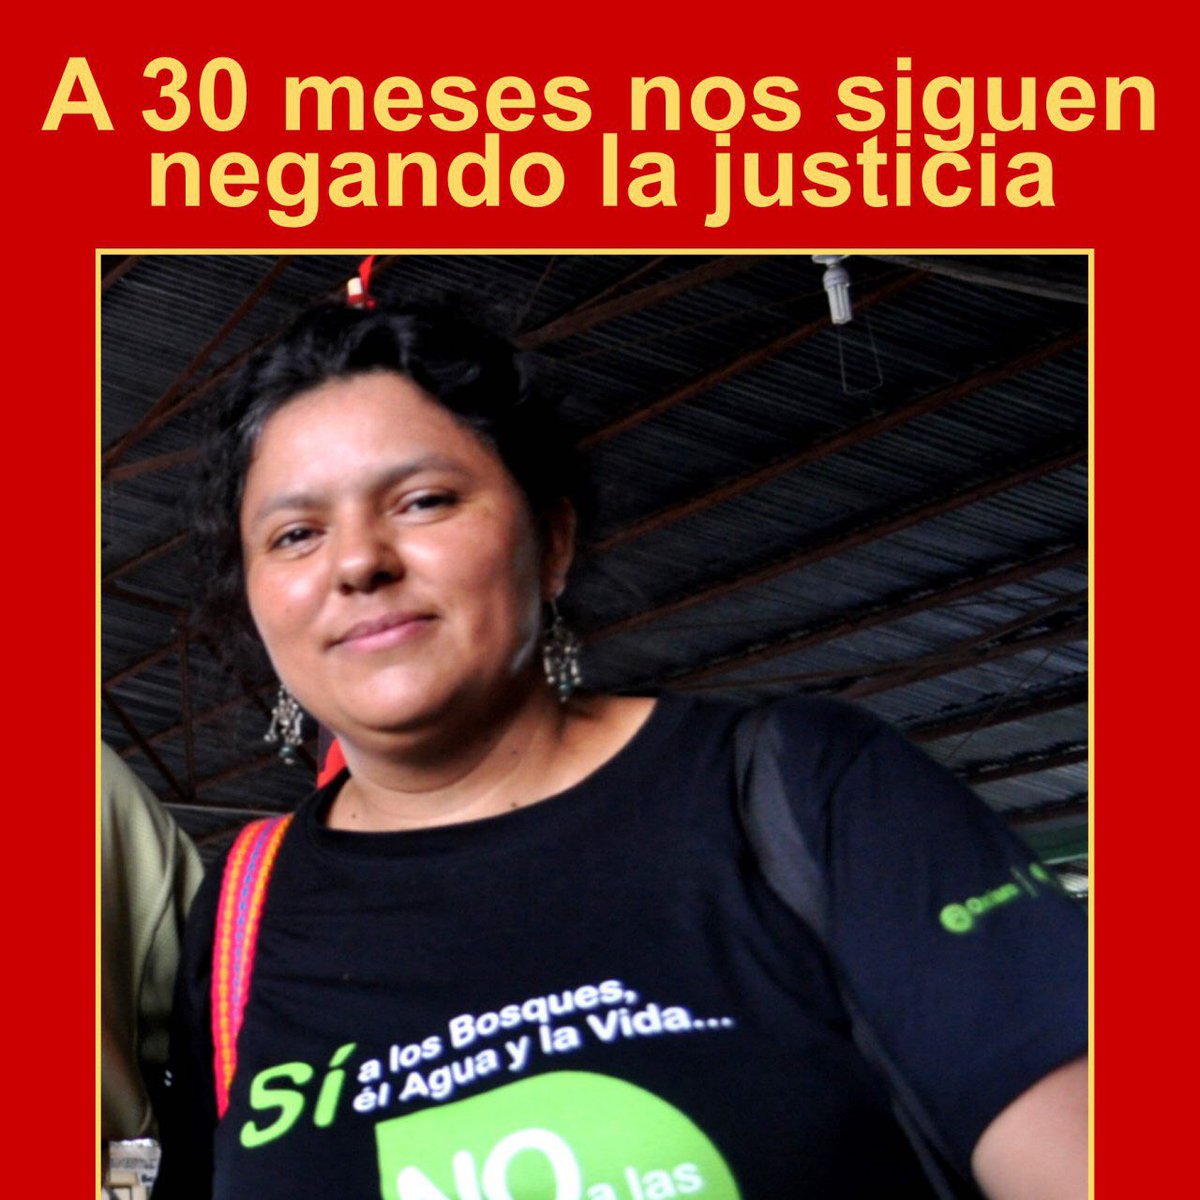 A 30 meses del asesinato de nuestra compañera Berta Cáceres, Nos siguen negando la justicia. 
¡Juicio y Castigo para los autores intelectuales! 
#JusticiaParaBerta
#AQuienProtegeElMP
#DESACulpable